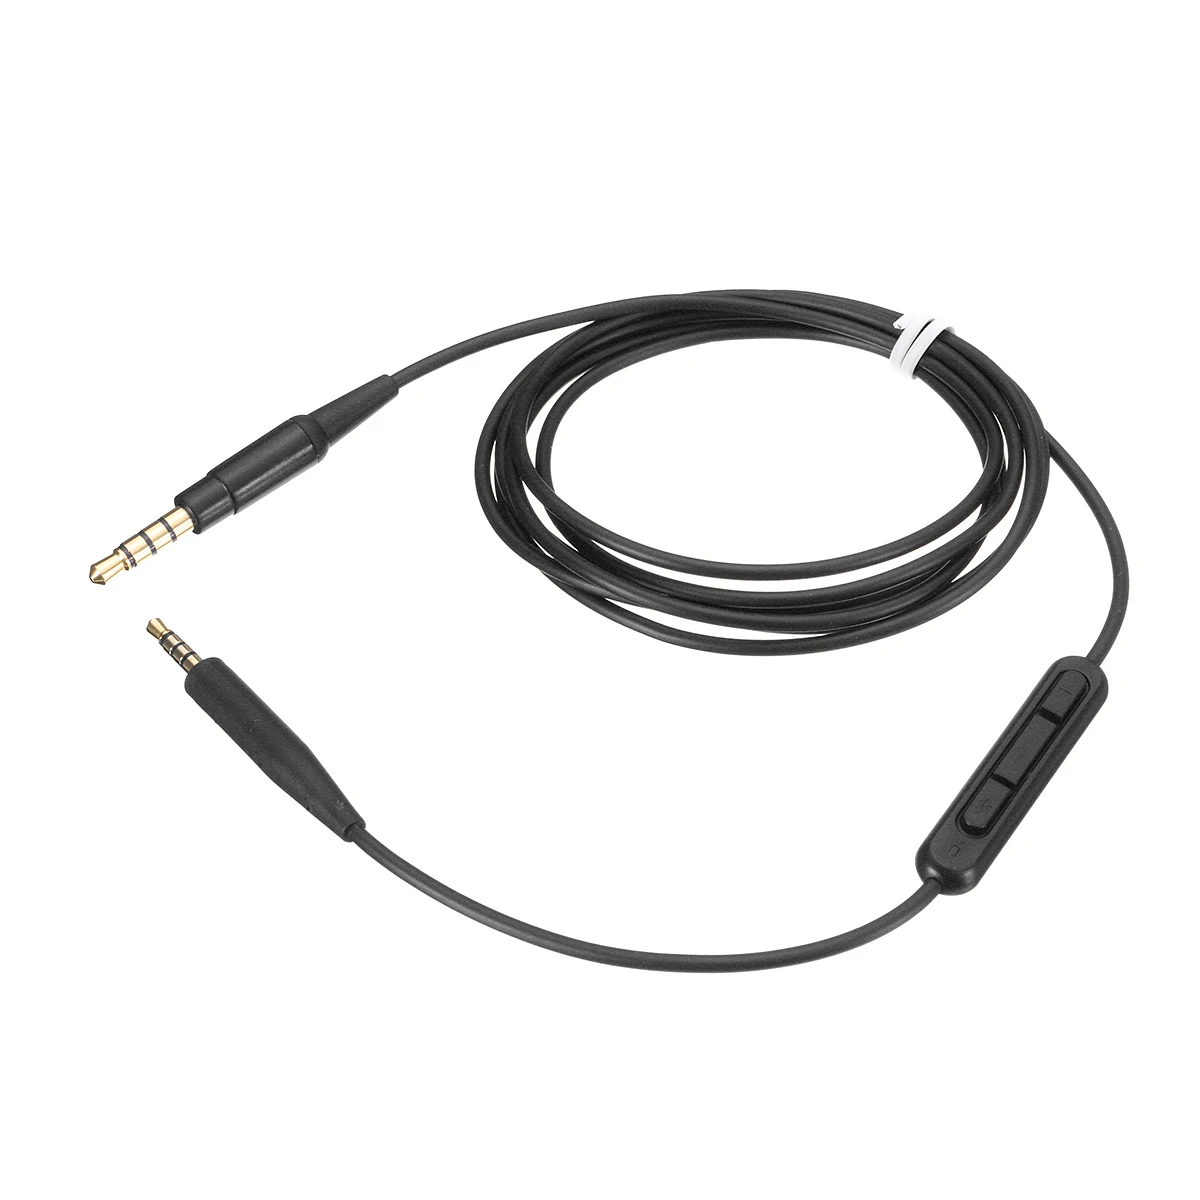 Микрофонный кабель для наушников, аудиокабель для QC35, QC25, OE2, soundtrue Soundlink, гарнитура, 3,5-2,5 пар звукозаписывающих кабелей, 140 см - Цвет: Black